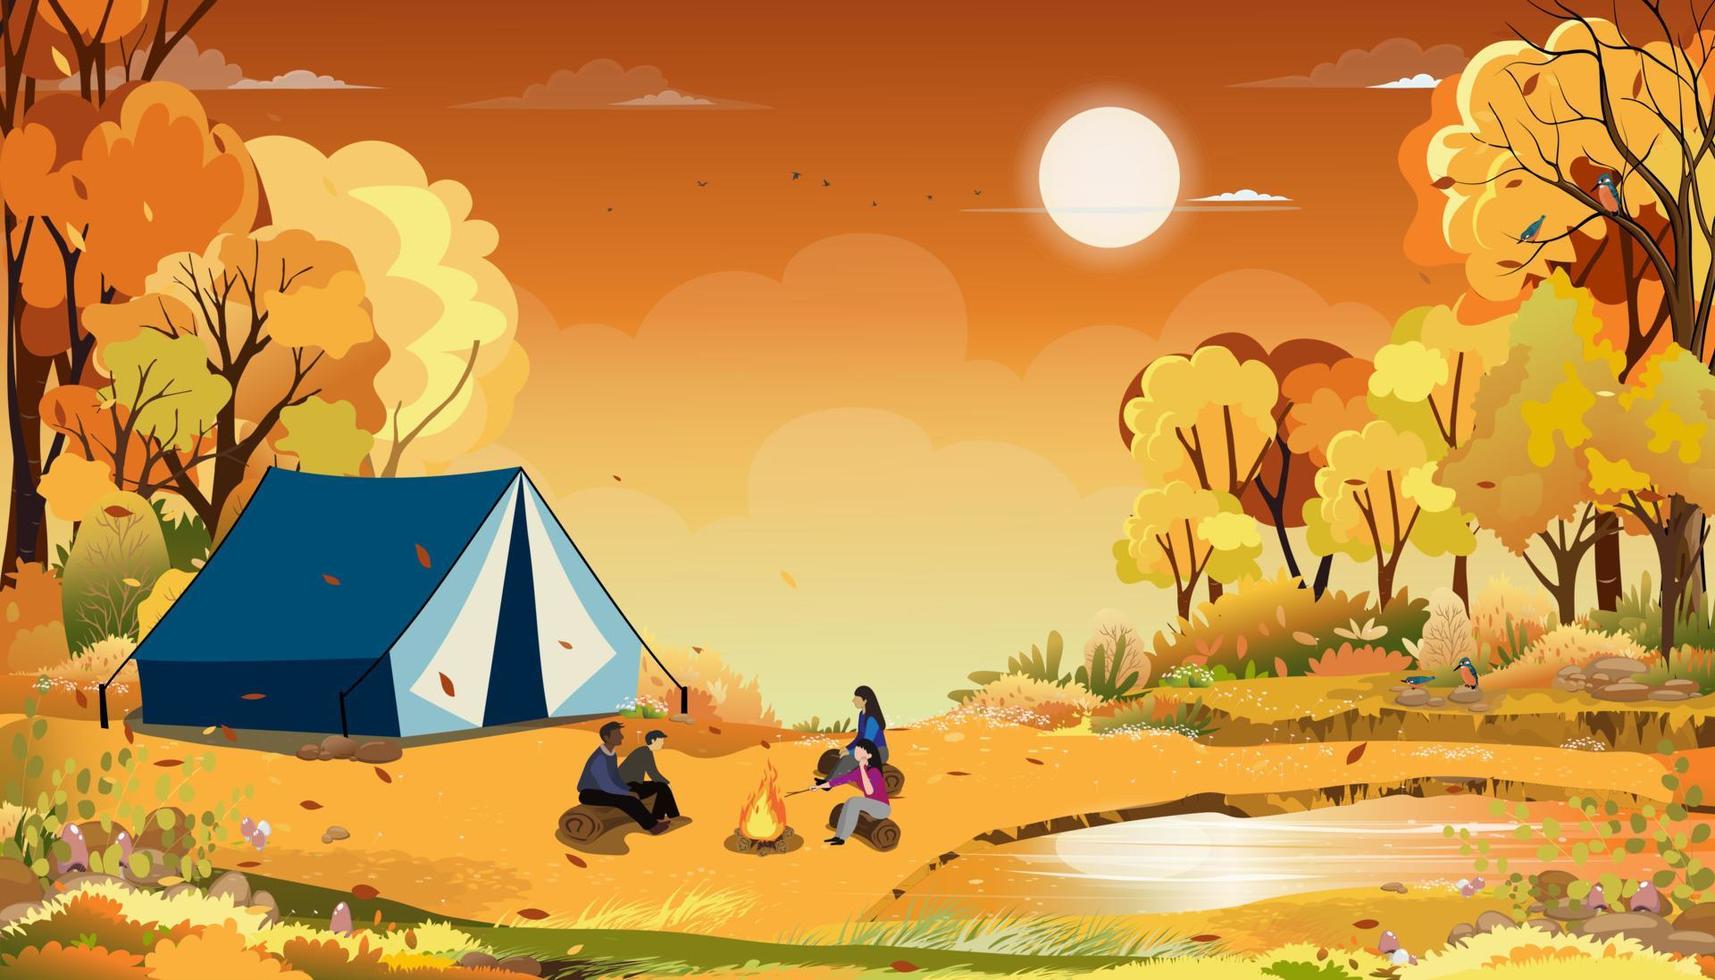 famille appréciant les vacances en camping à la campagne en automne, groupe de personnes assises près de la tente et du feu de camp s'amusant à parler ensemble, paysage rural vectoriel dans l'arbre forestier d'automne avec ciel coucher de soleil